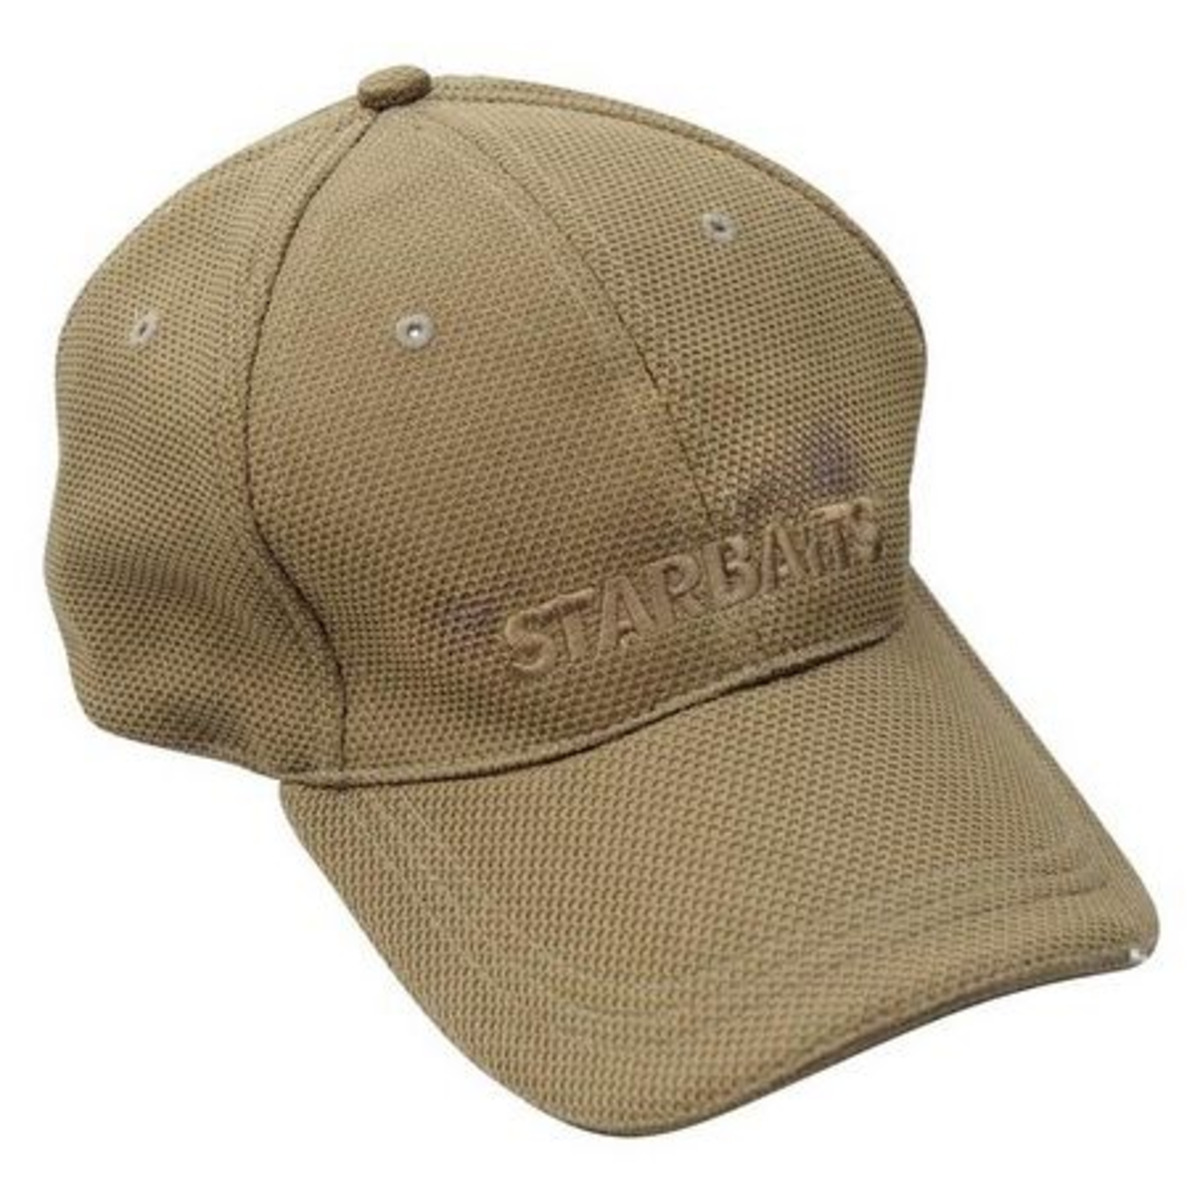 Starbaits Khaki Cap - One Size